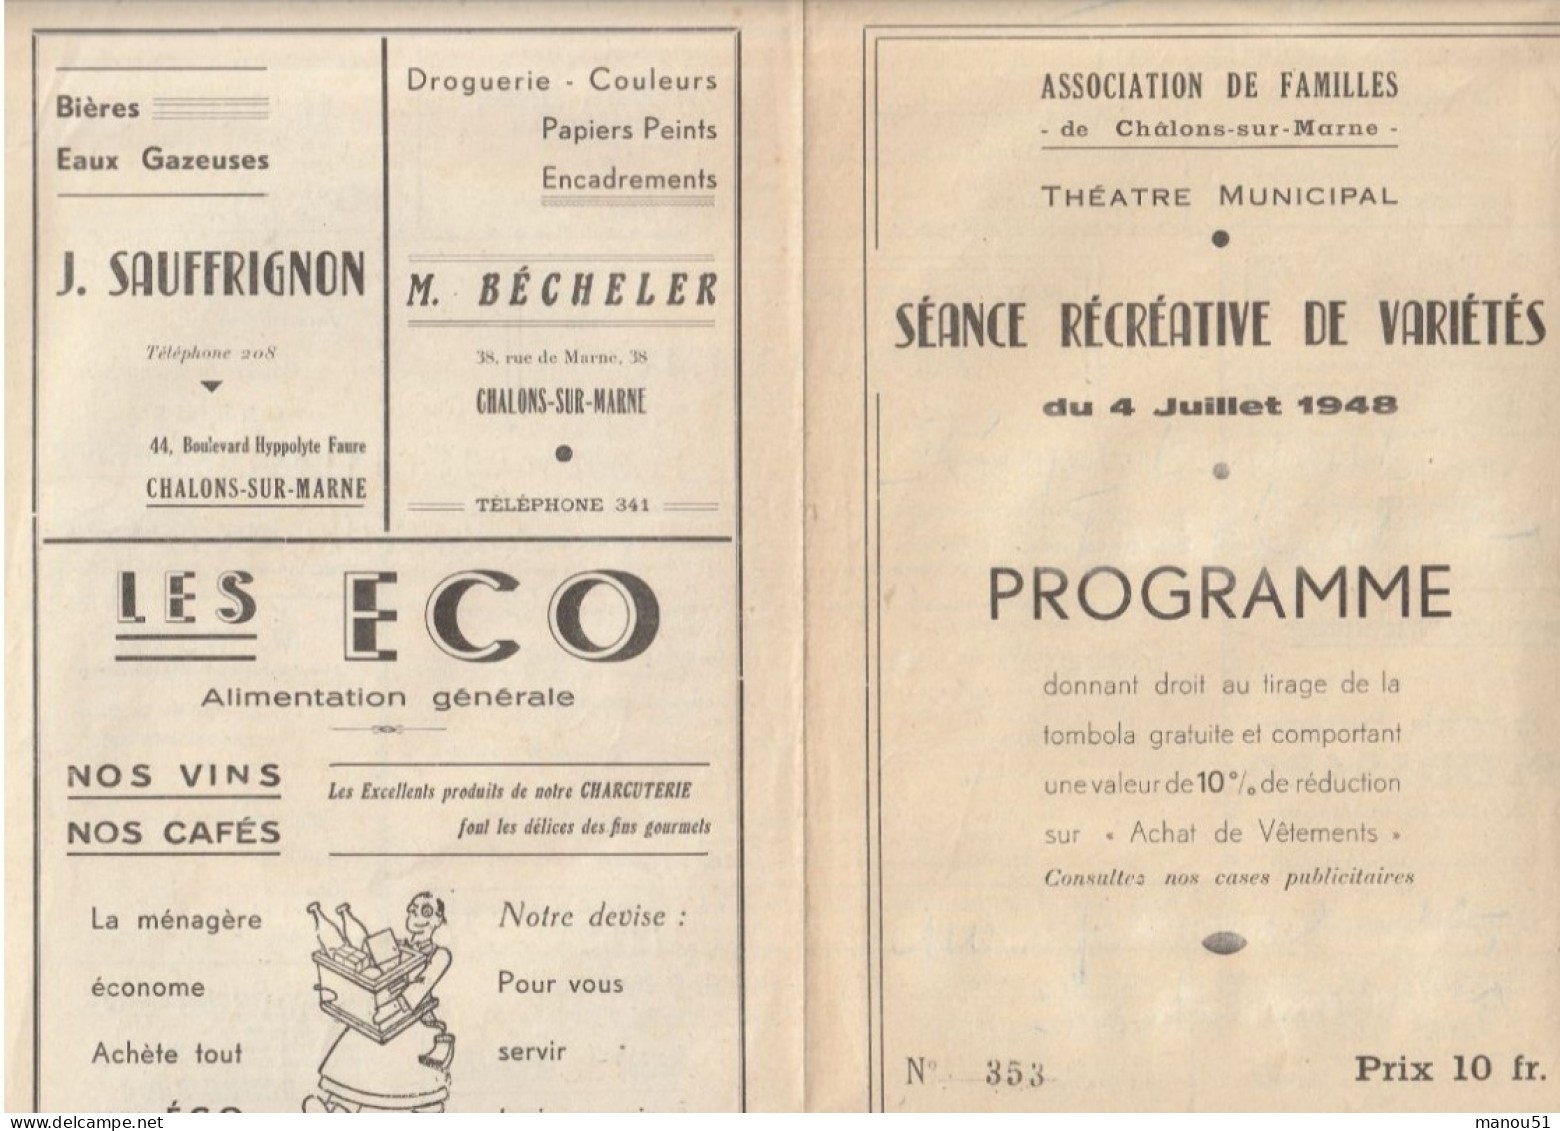 CHALONS Sur MARNE - Théâtre Municipal - Programme Soirée Récréative De Variétés 4 Juillet 1948 - Programmi